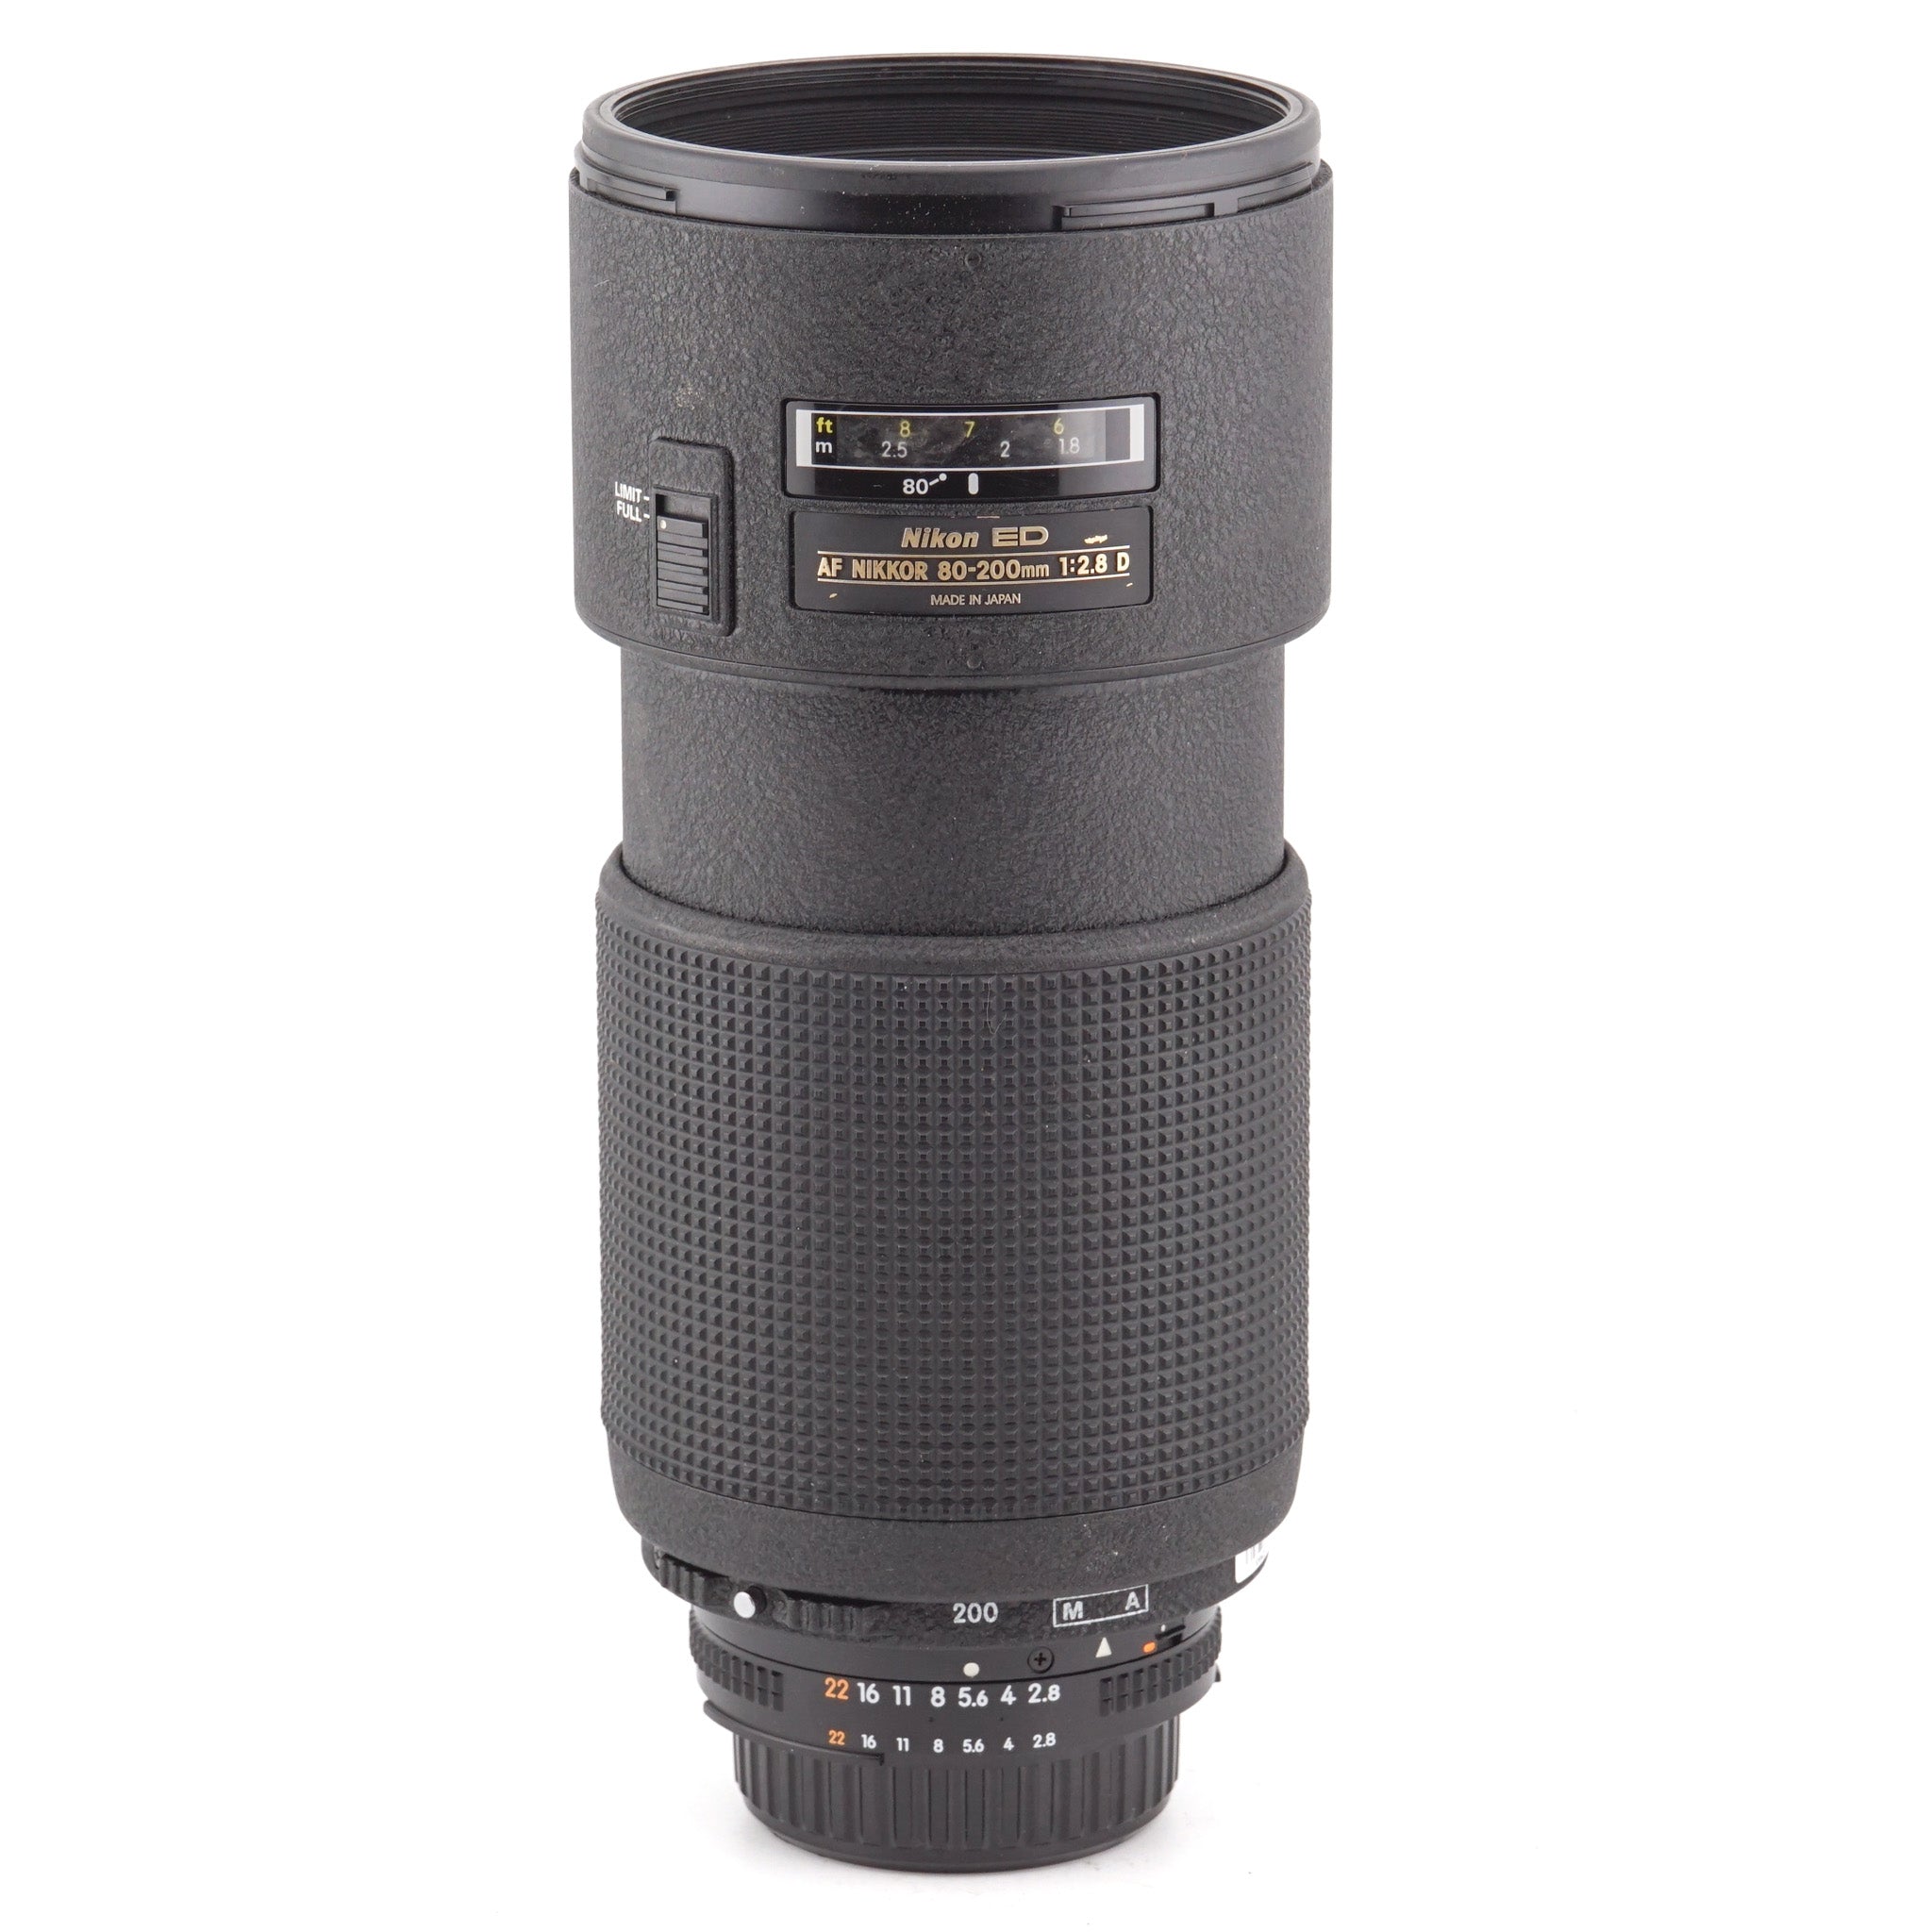 Nikon 80-200mm f2.8 ED D AF Nikkor (Mk II) - Lens